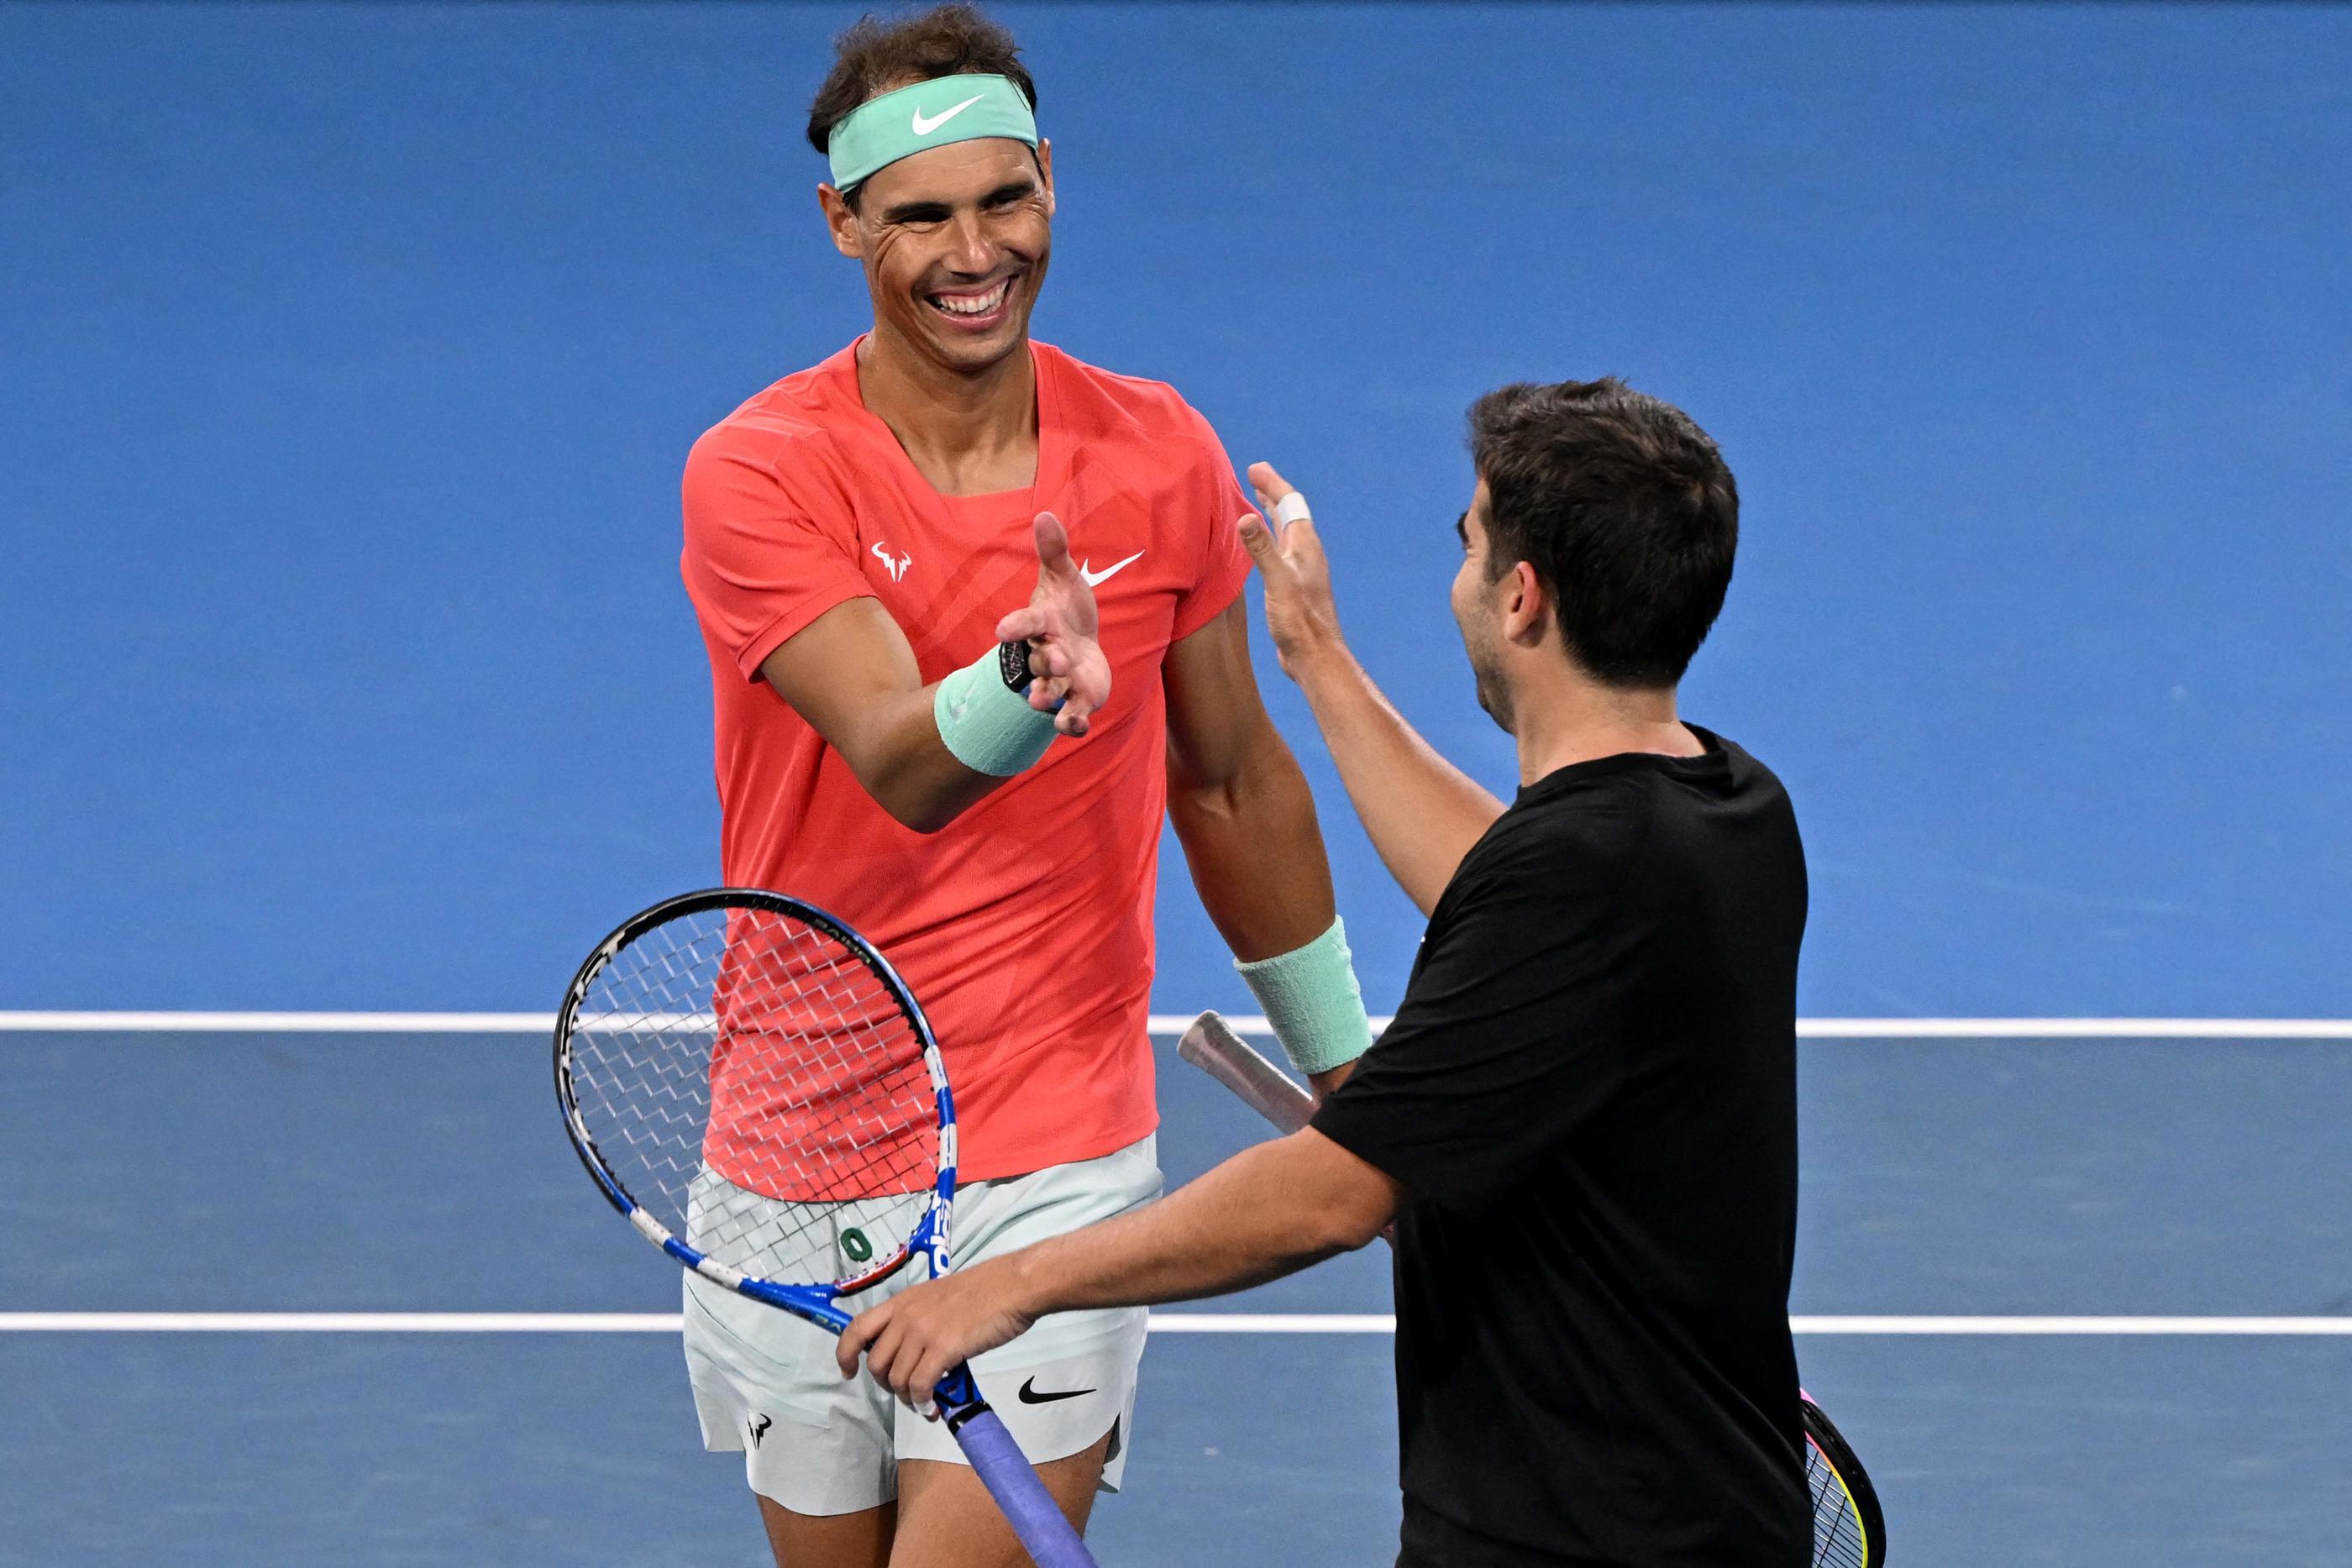 Tout sourire, Rafael Nadal tape dans la main de son entraîneur Marc Lopez, avec lequel il avait remporté la médaille d'or aux JO 2016.